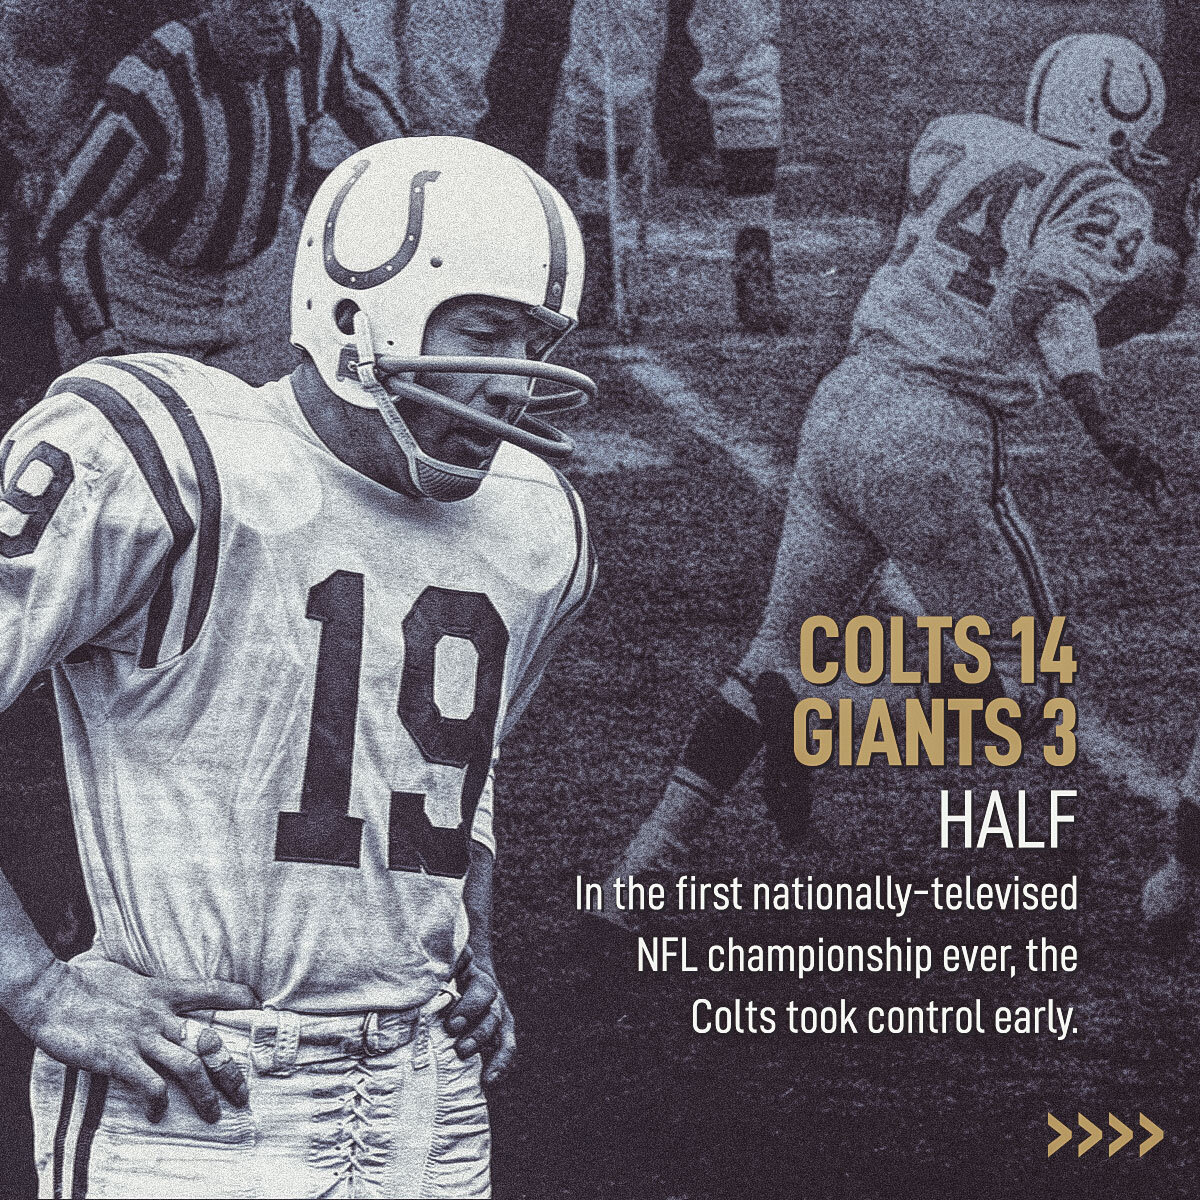 190923_NFL_GreatestGames_ColtsGiants_Carousel_SO_02.jpg